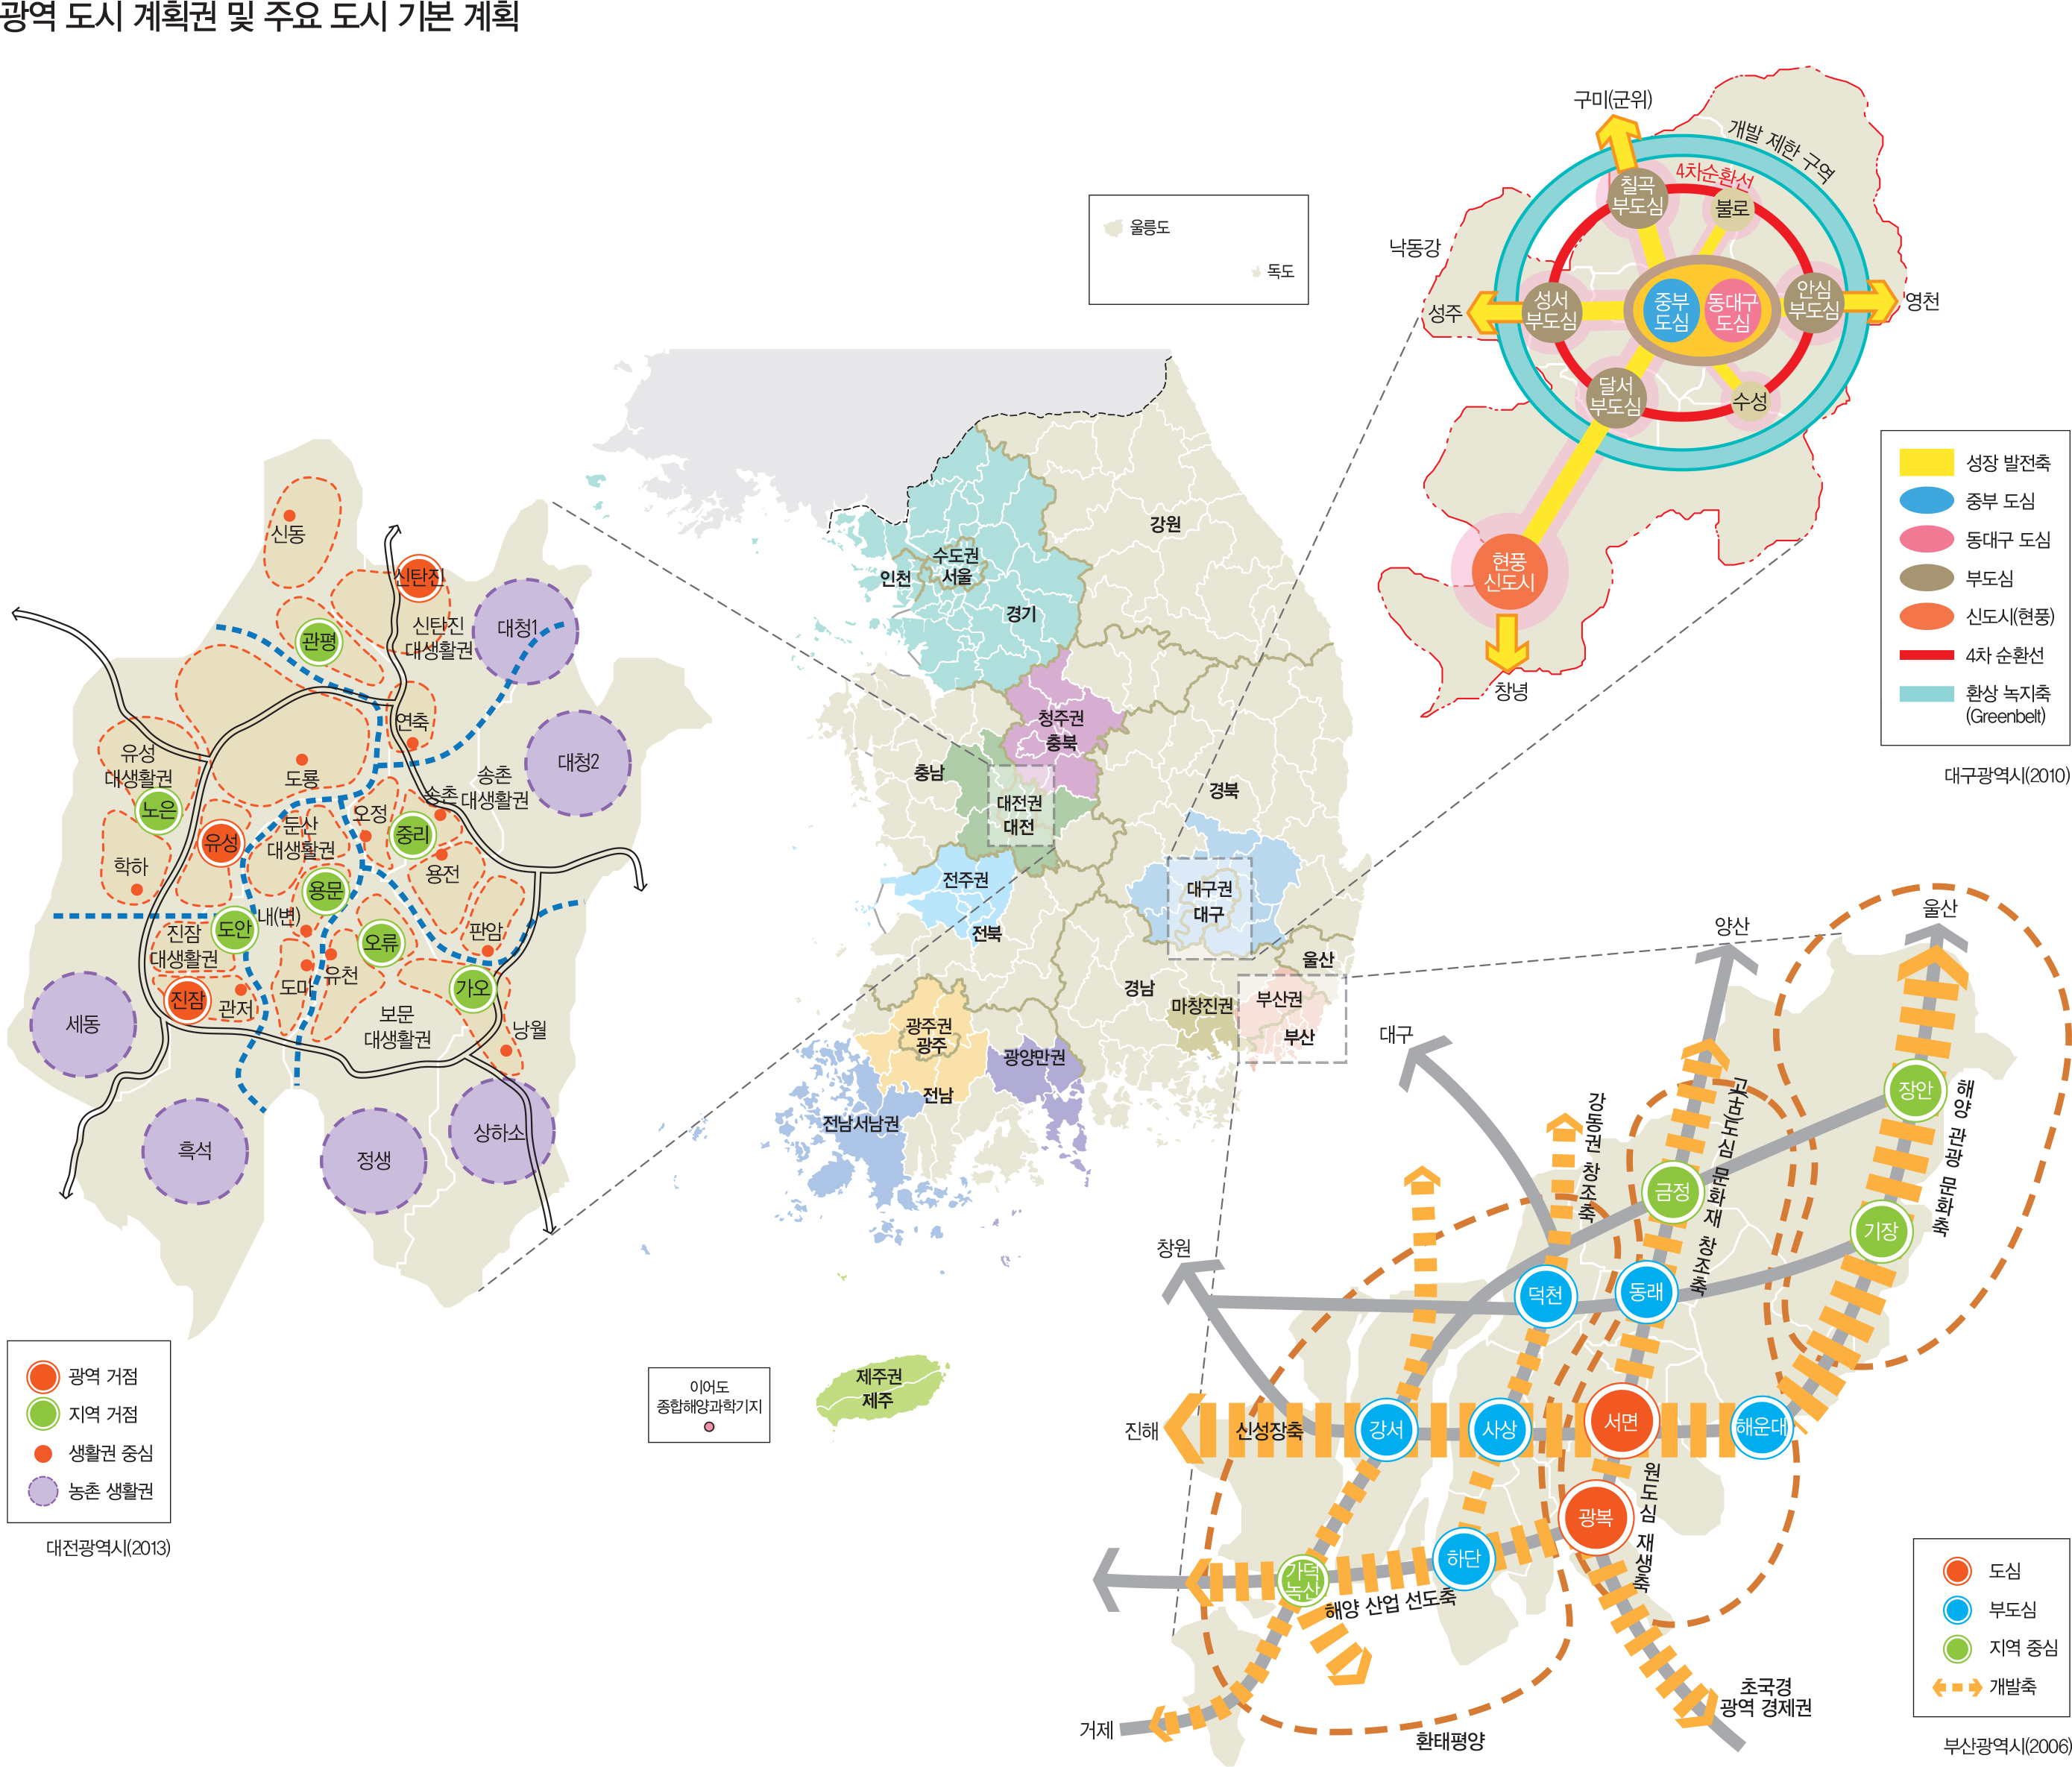  광역 도시 계획권 및 주요 도시 기본 계획